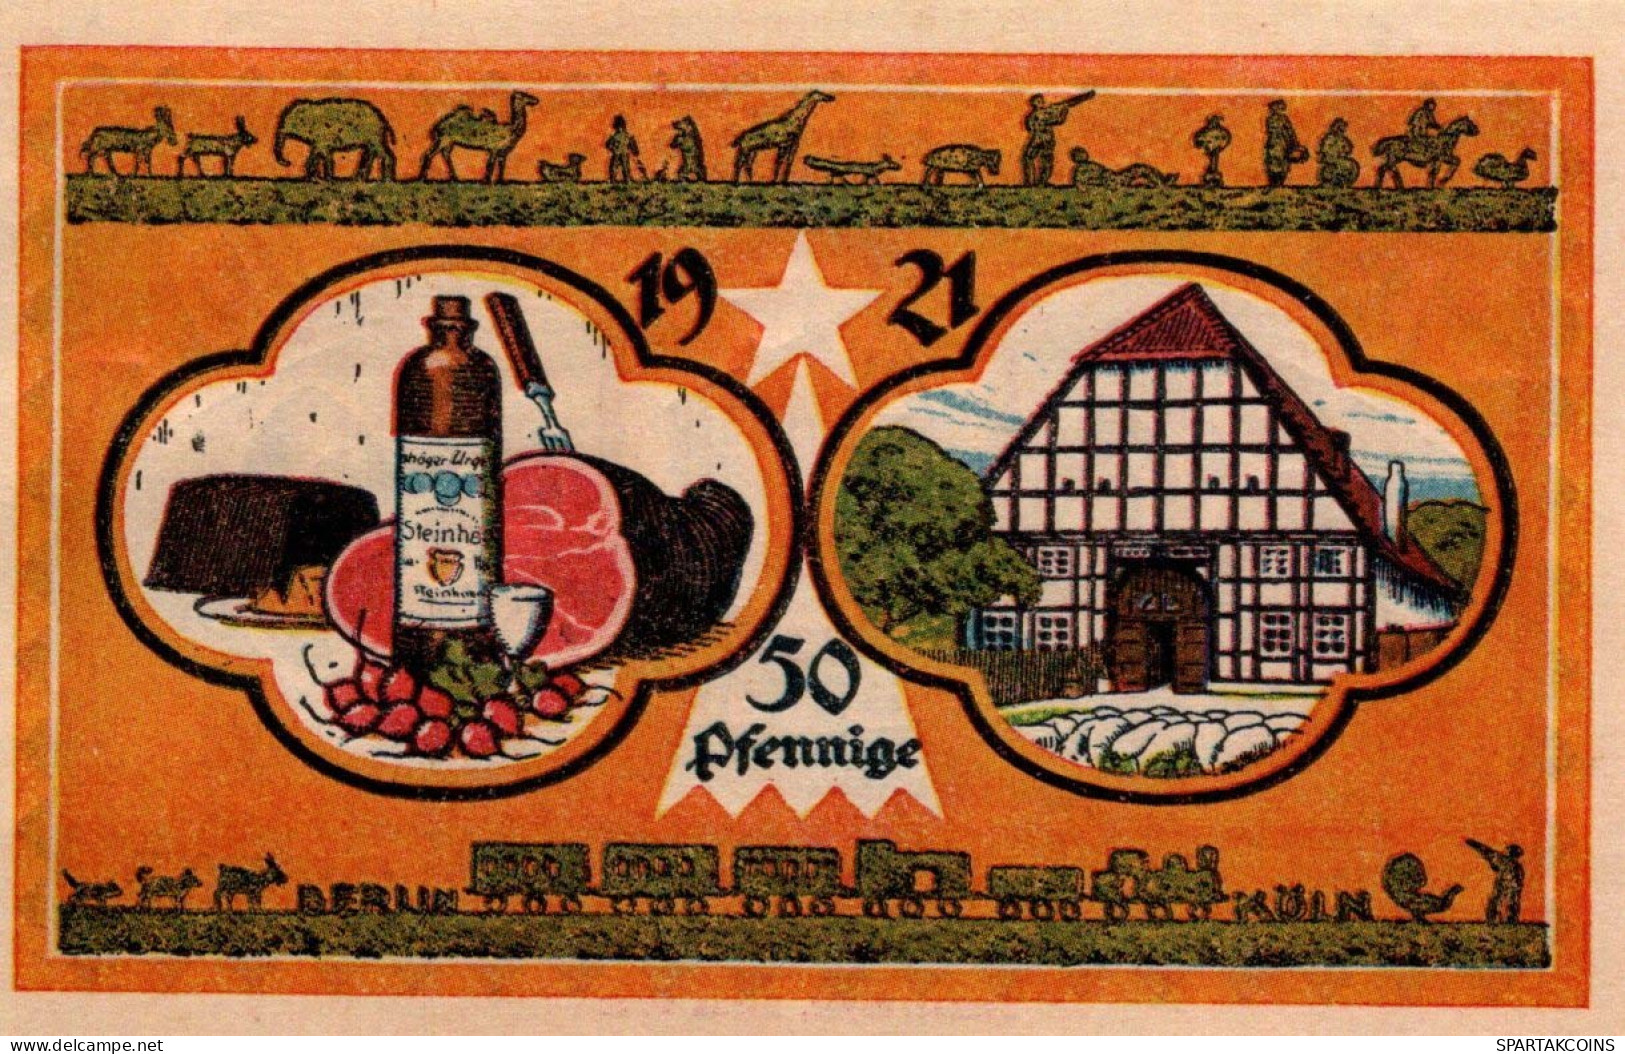 50 PFENNIG 1921 Stadt STEINHEIM IN WESTFALEN Westphalia UNC DEUTSCHLAND #PI962 - [11] Emissions Locales